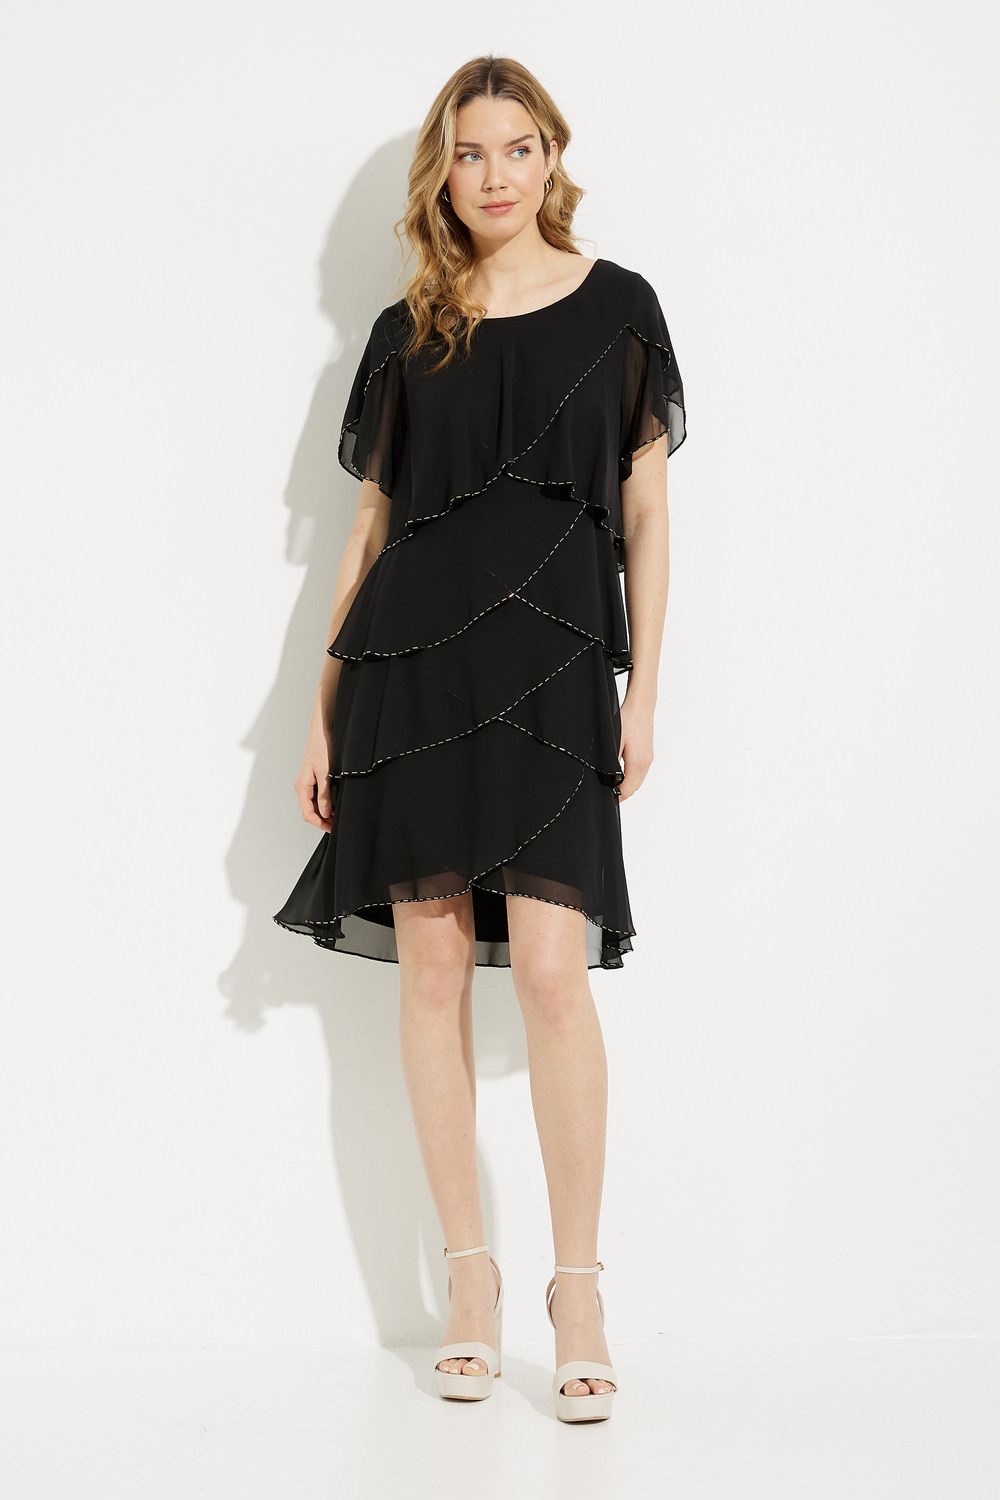 Tiered Chiffon Dress Style 9170656. Black